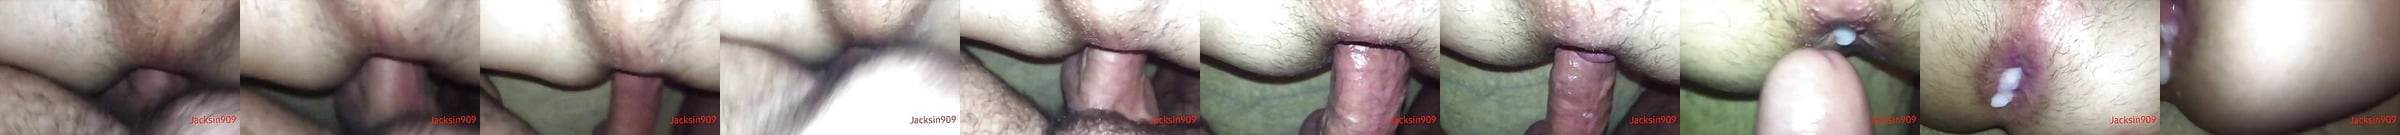 Virgin Ass Free Gay Ass Man Porn Video 62 XHamster XHamster